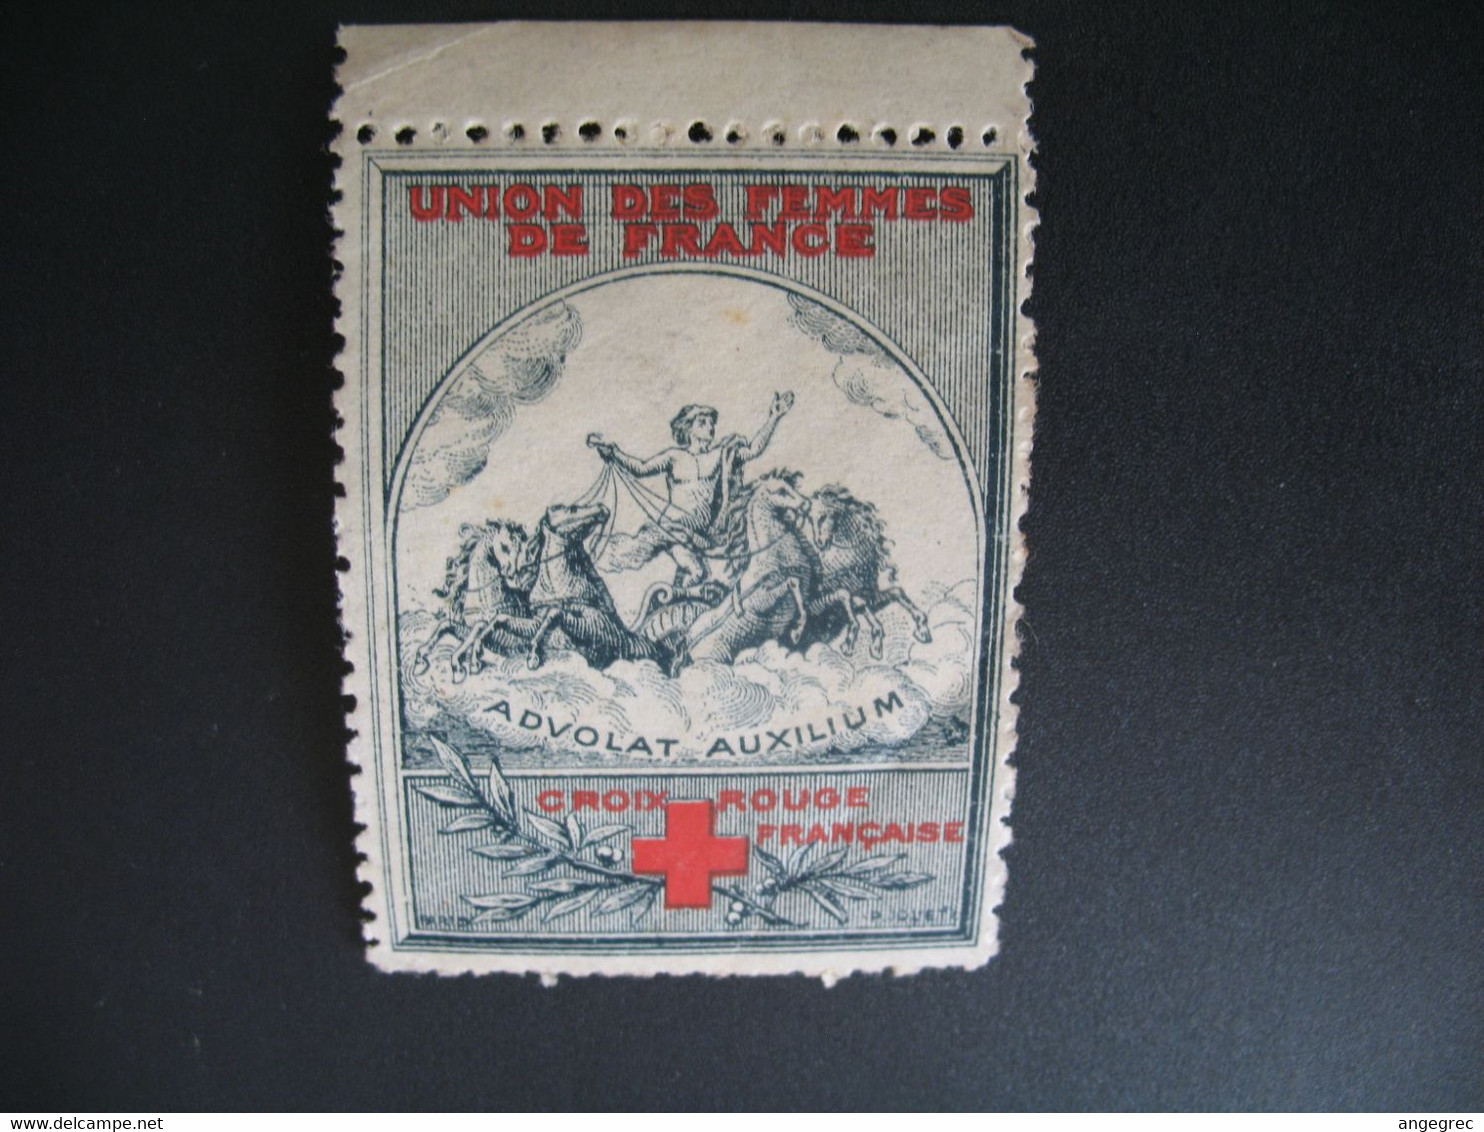 Vignette Militaire Delandre Guerre De 1914 - Croix Rouge - Red Cross - Croix Rouge Française   Advolat Auxilium - Rotes Kreuz